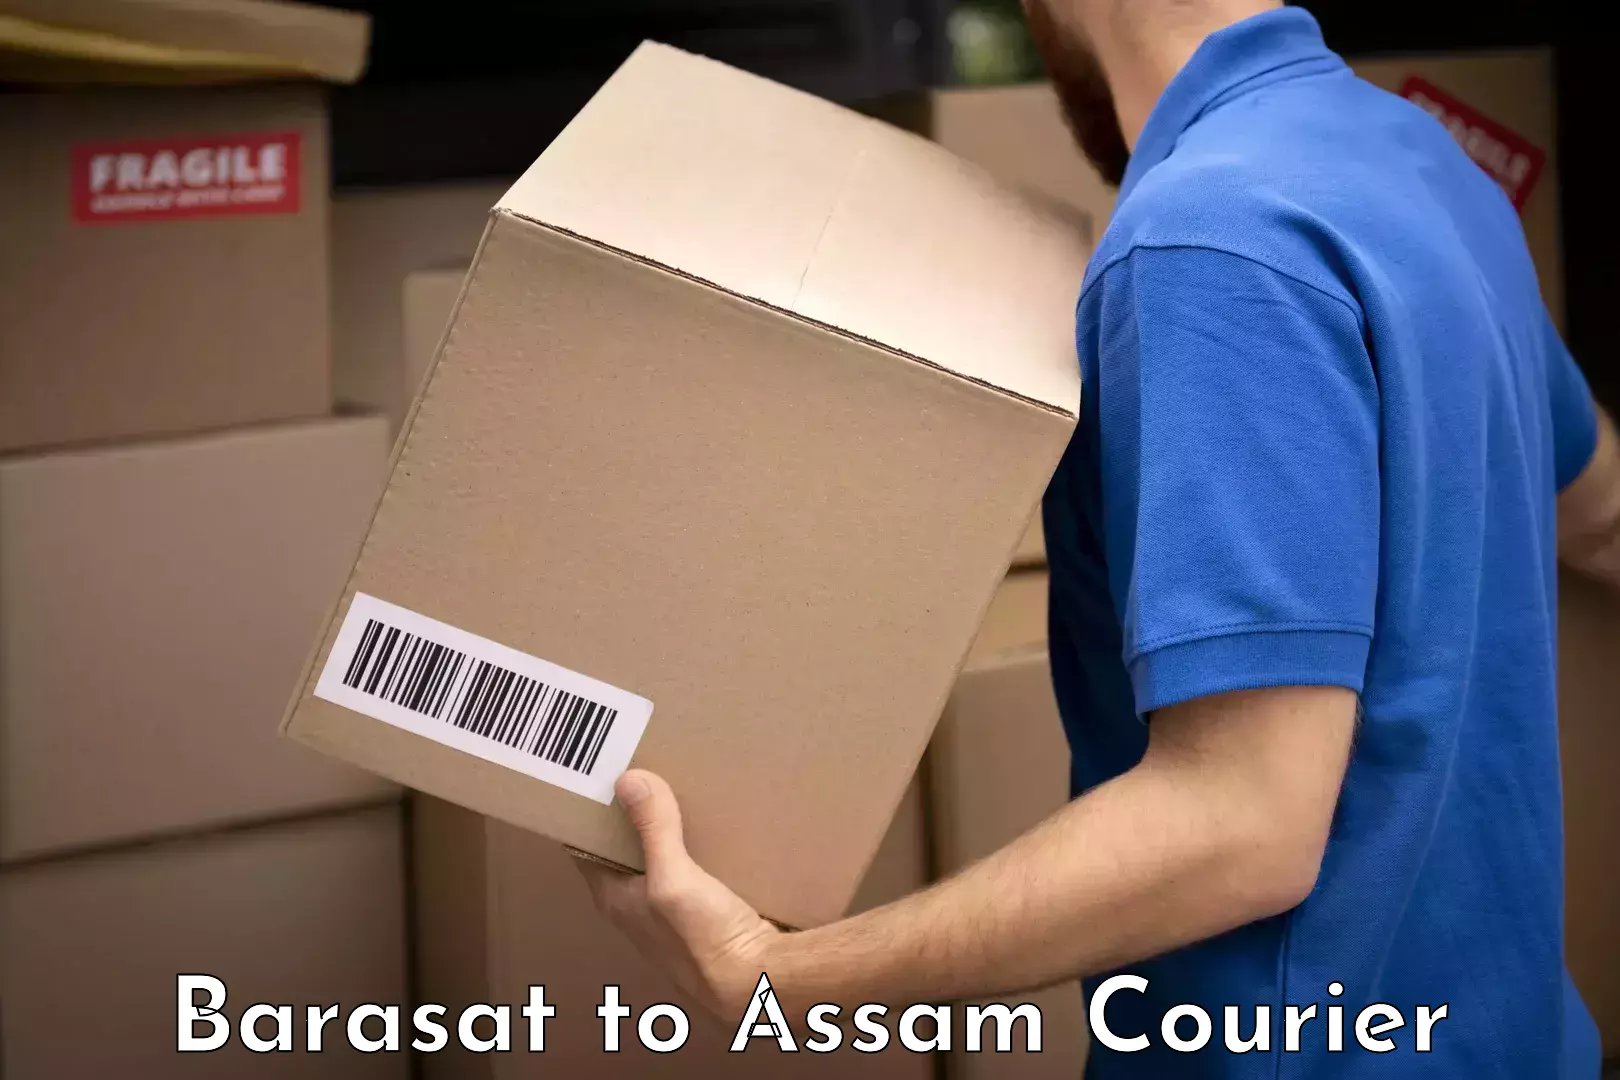 Baggage shipping service Barasat to Mayang